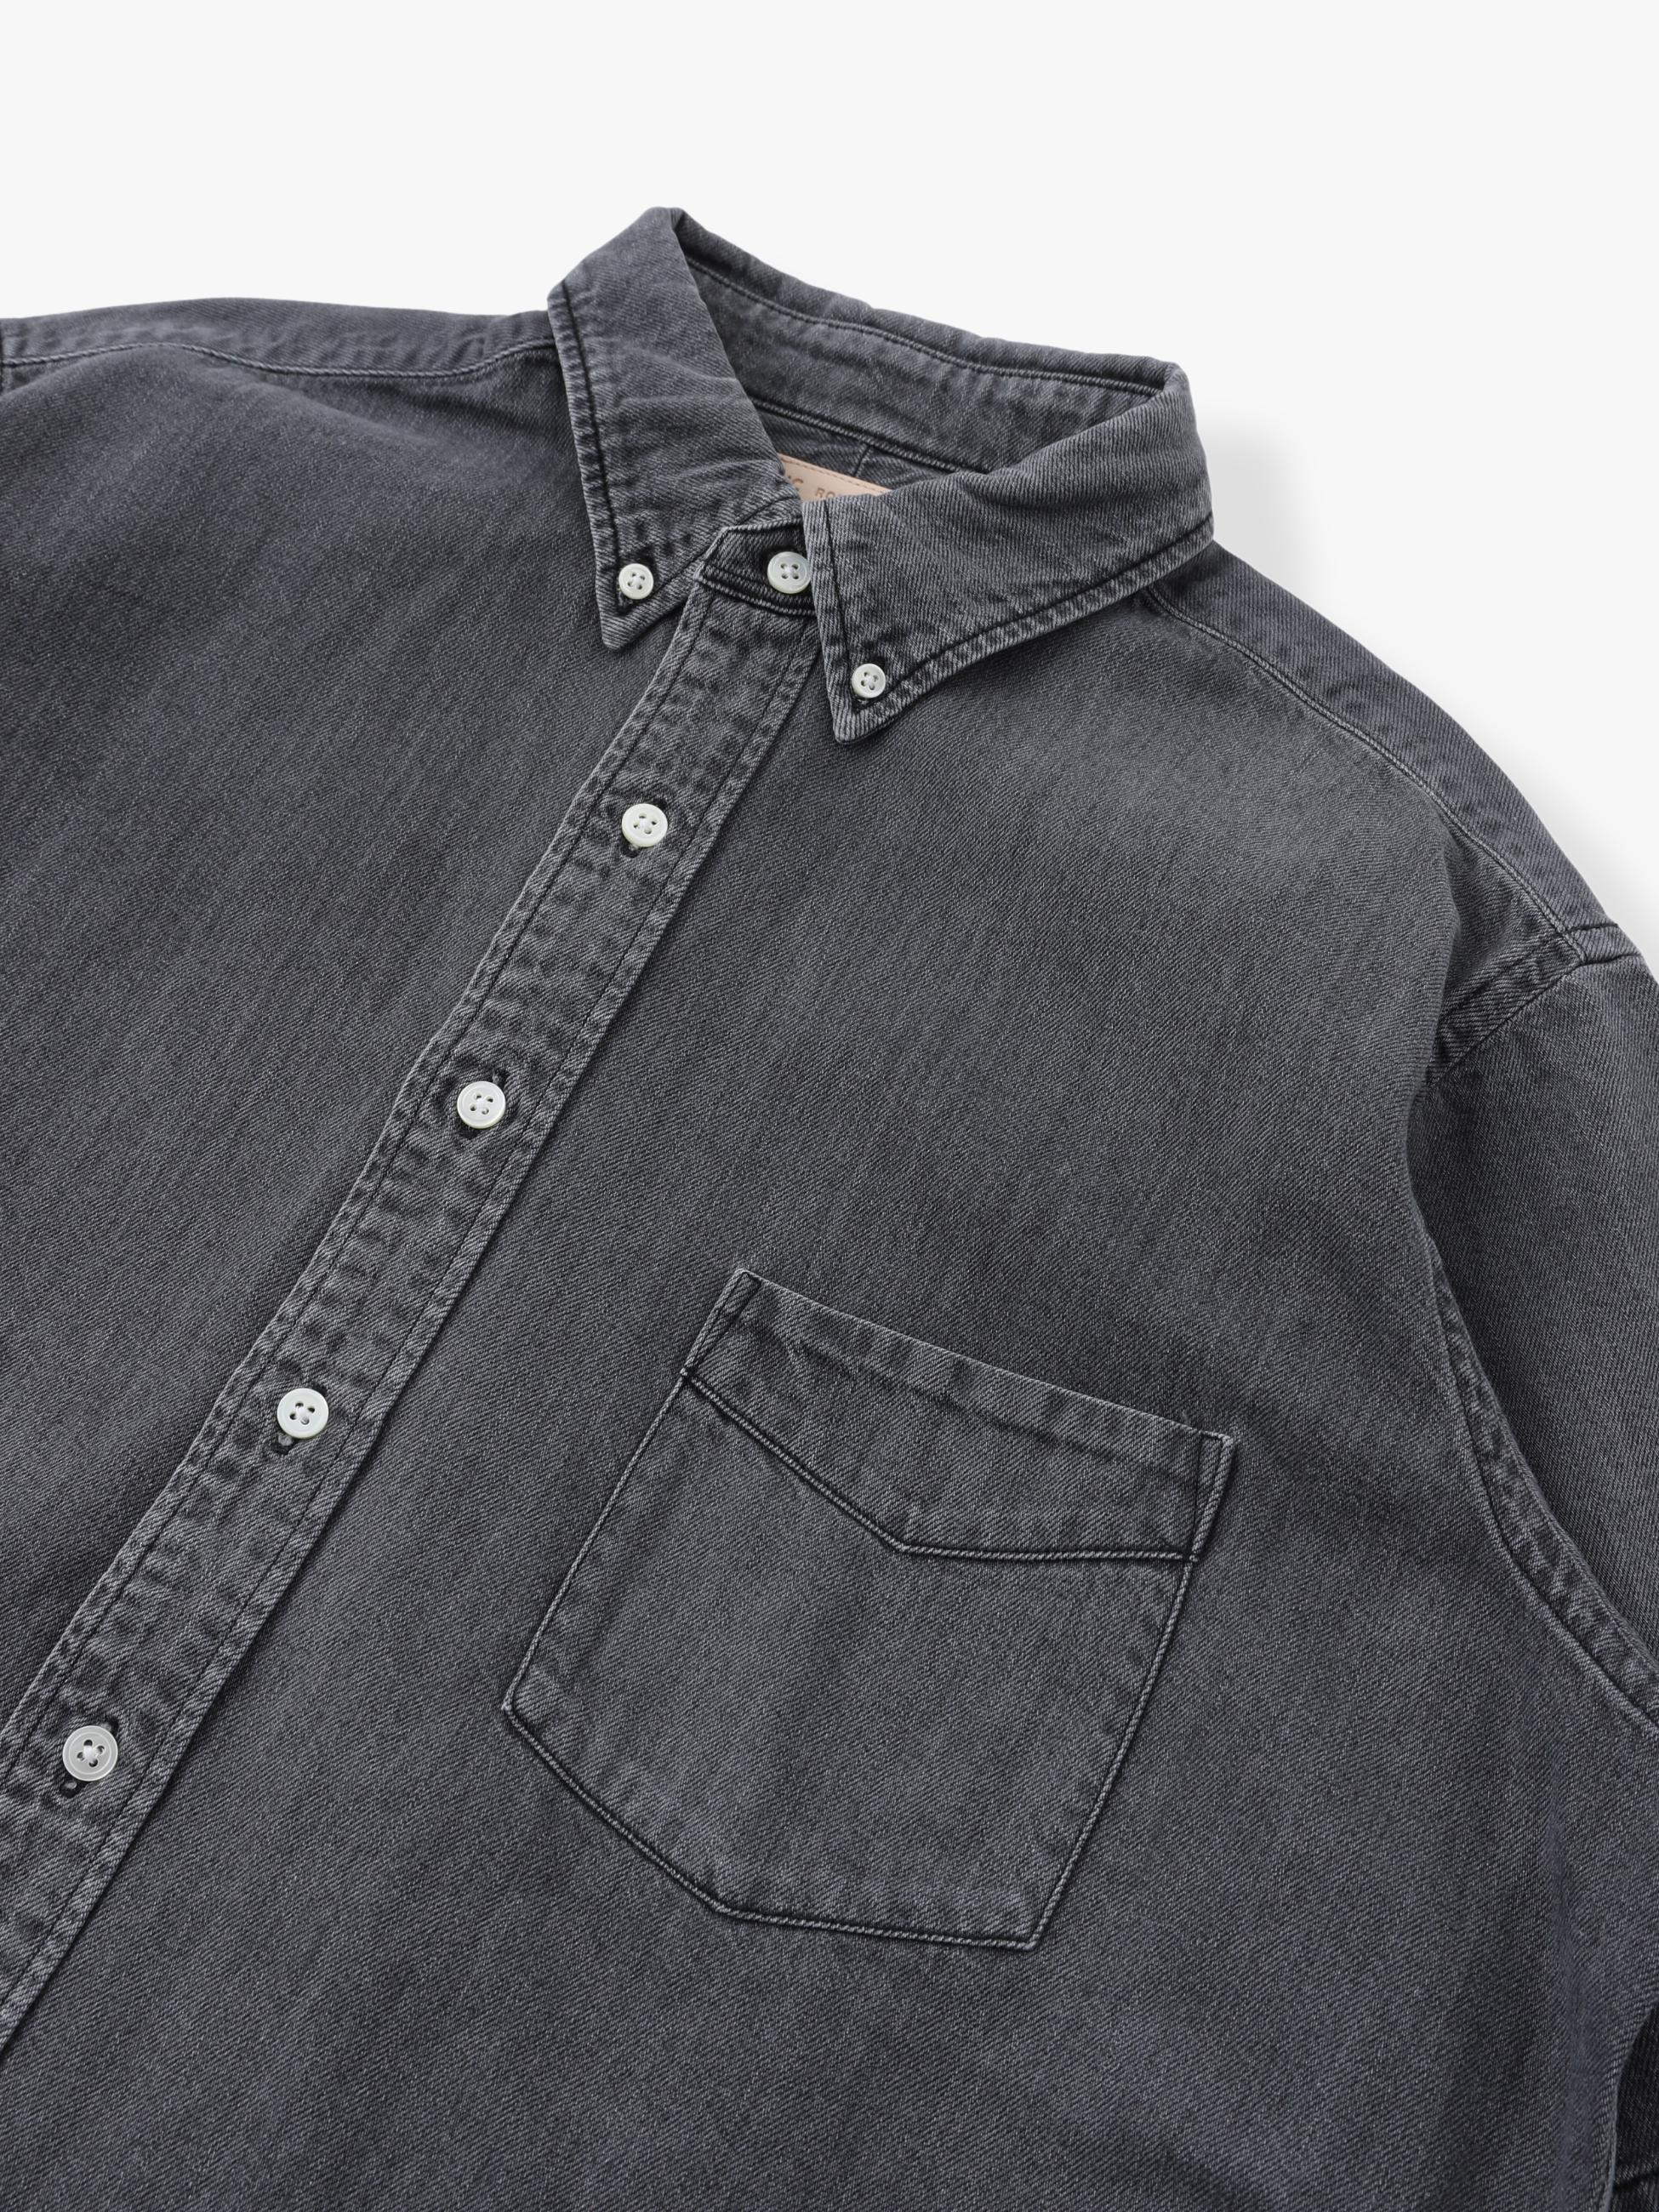 Black Denim Short Sleeve Shirt｜RHC(アールエイチシー)｜Ron Herman